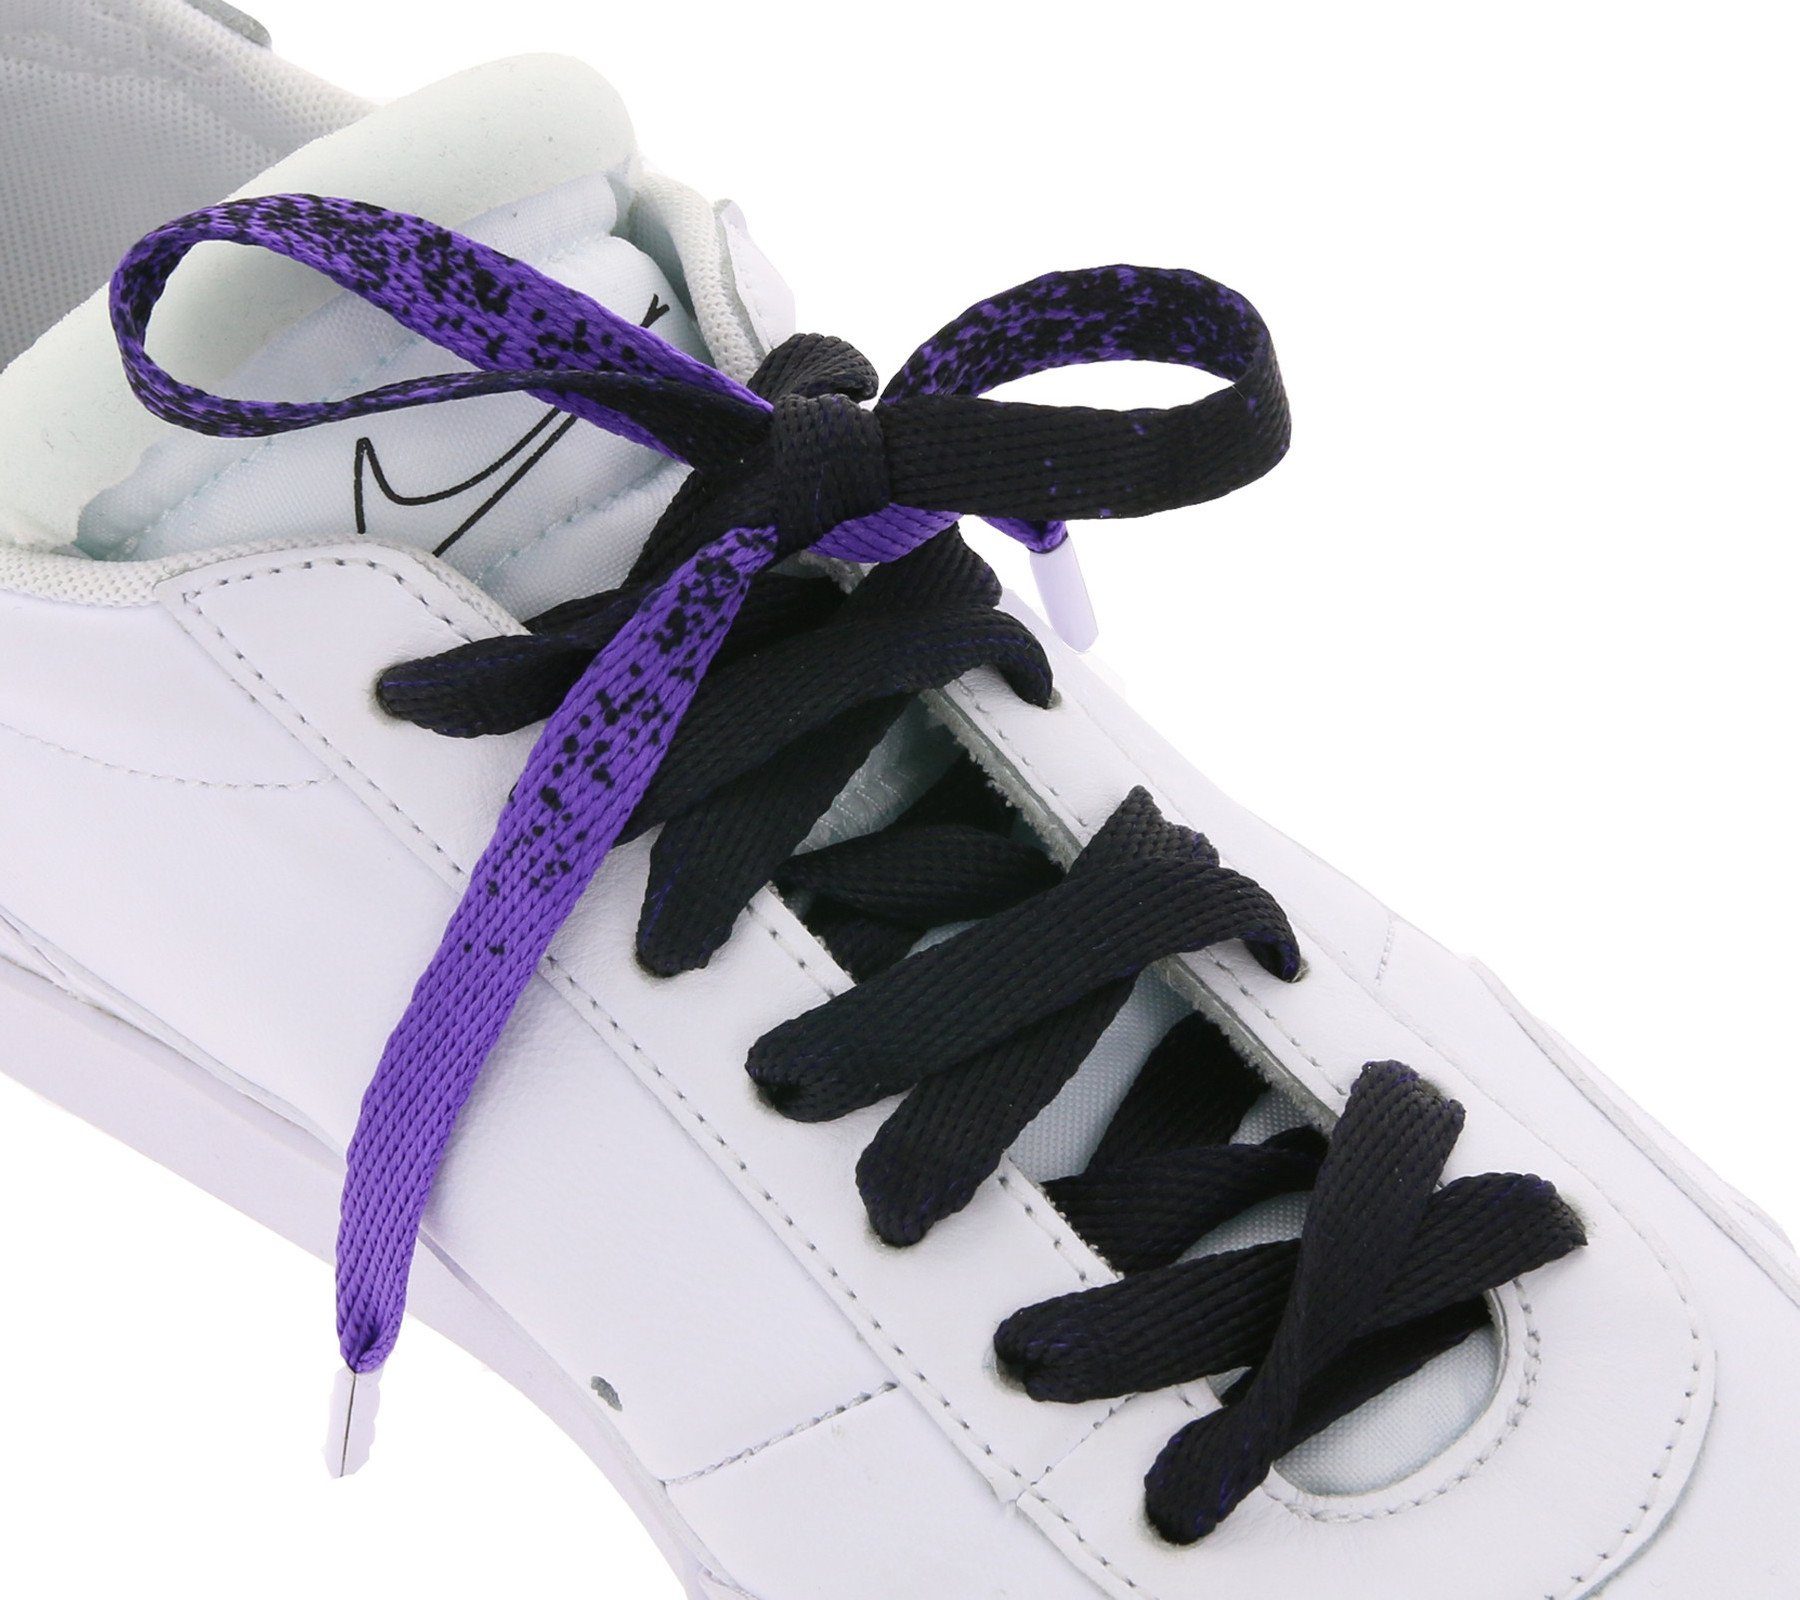 Schnürsenkel Schuhbänder TubeLaces Schnürsenkel Schnürbänder Violett/Schwarz trendige Schuhe Tubelaces